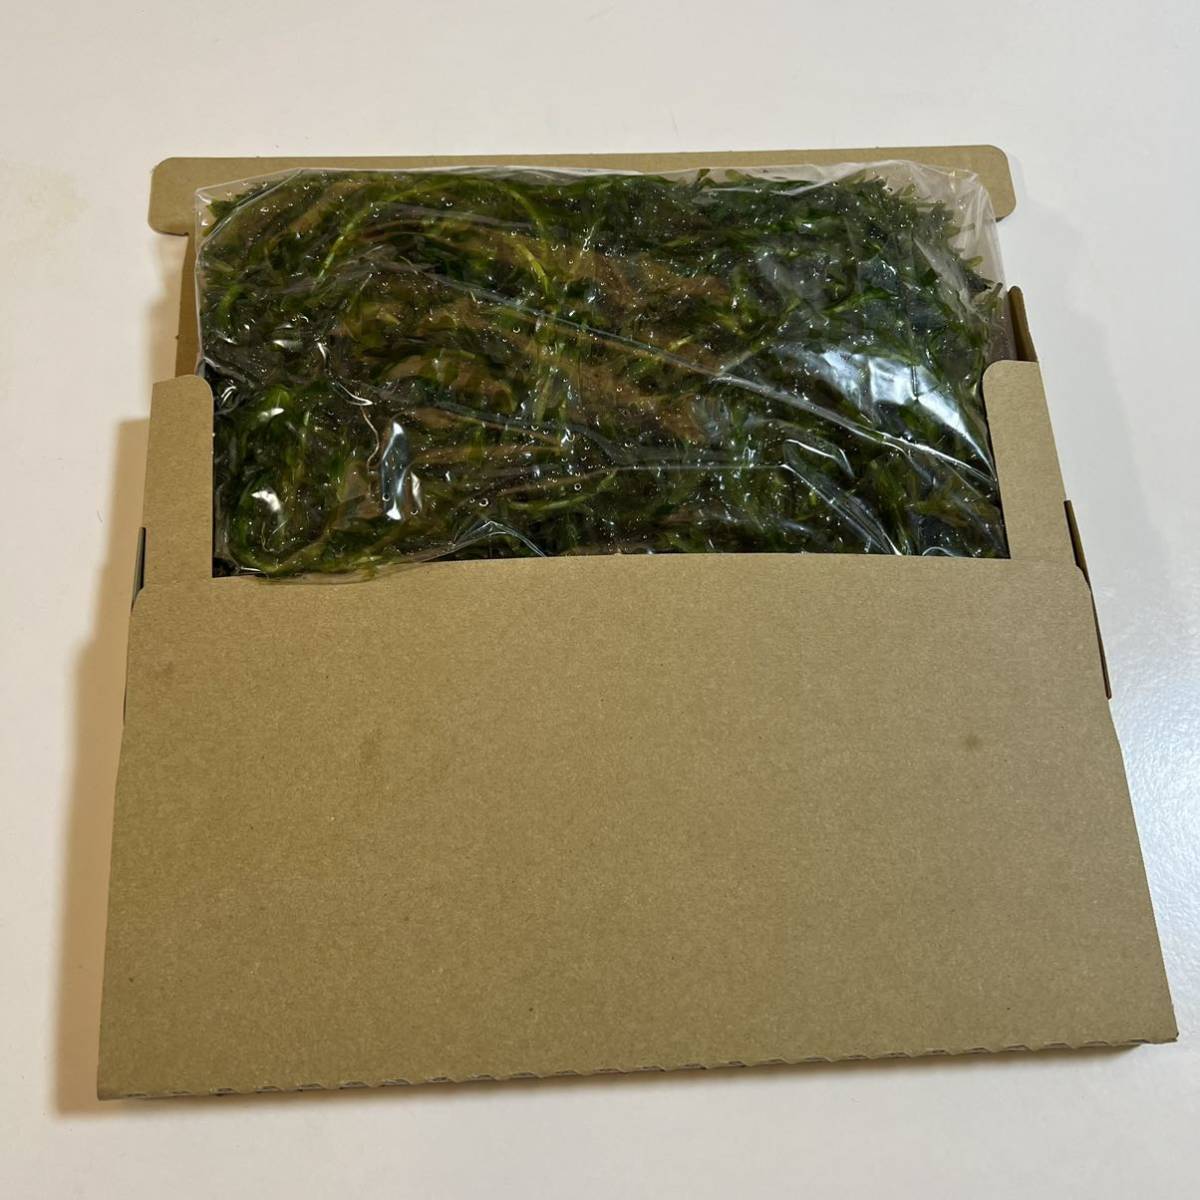 送料込み 無農薬アナカリス ネコポスの箱いっぱいに入れます エビ ザリガニ メダカ めだか 金魚の餌 オオカナダモ 水草 金魚草 金魚藻の画像2